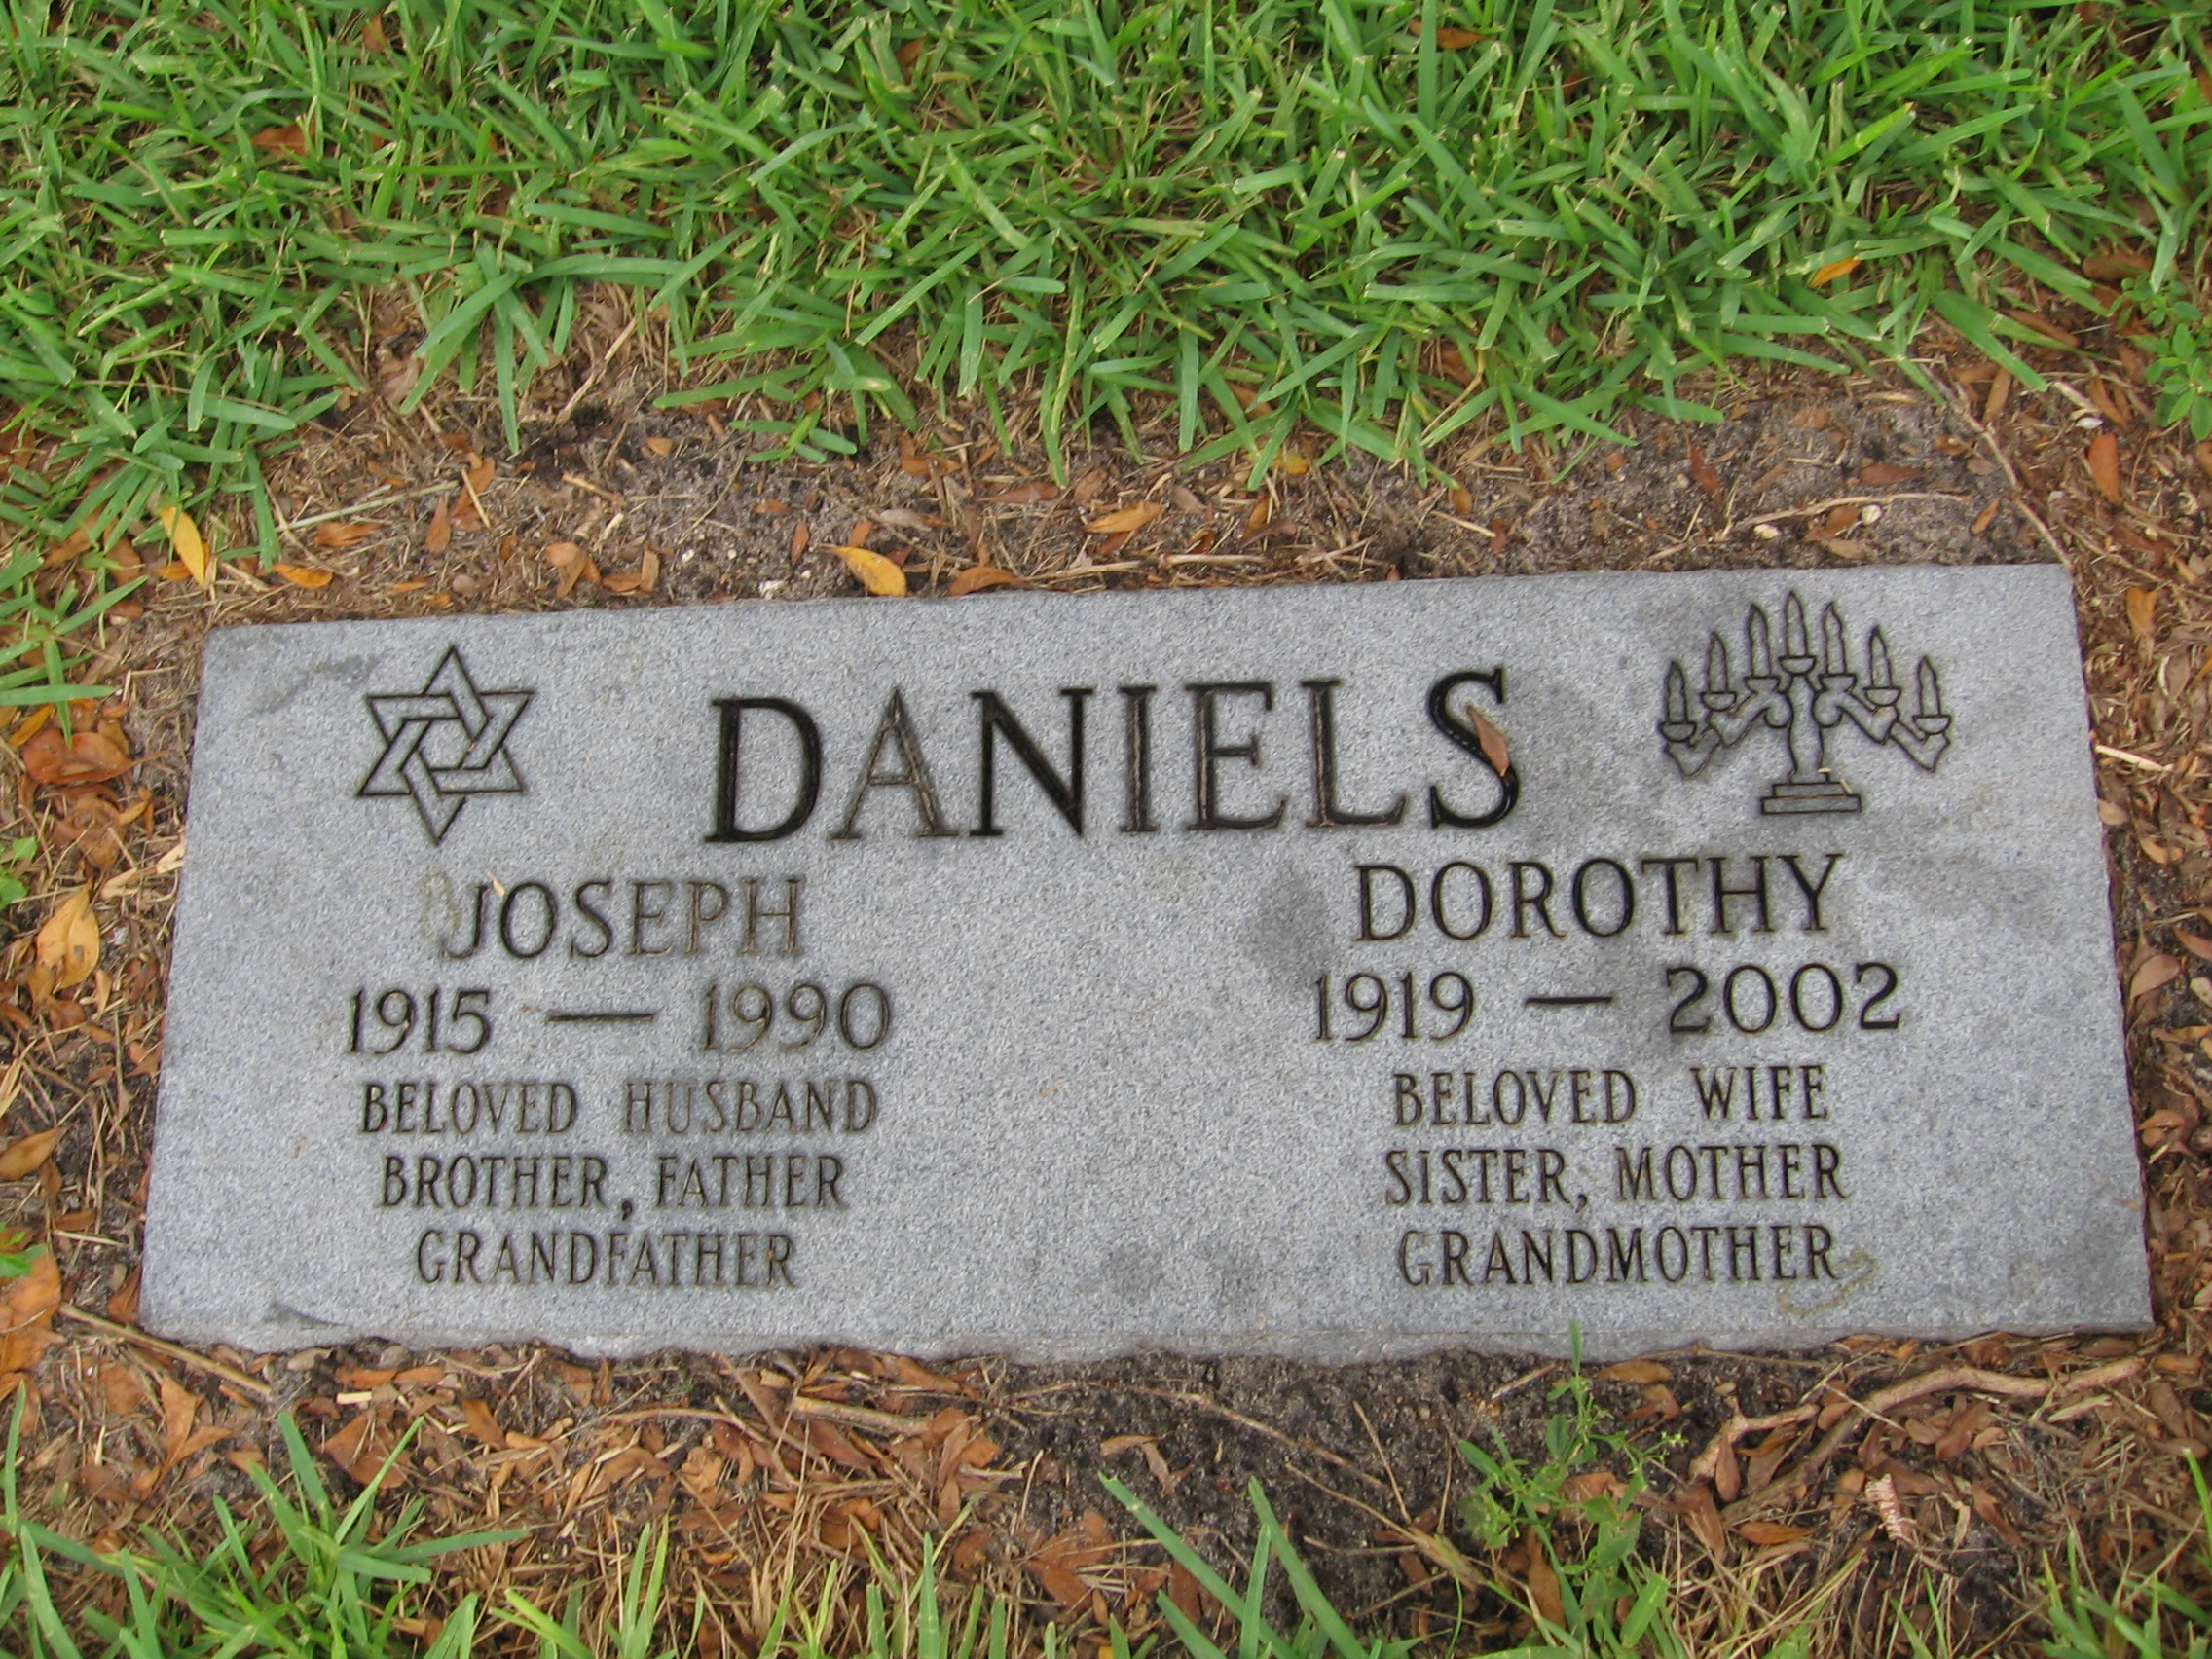 Dorothy Daniels